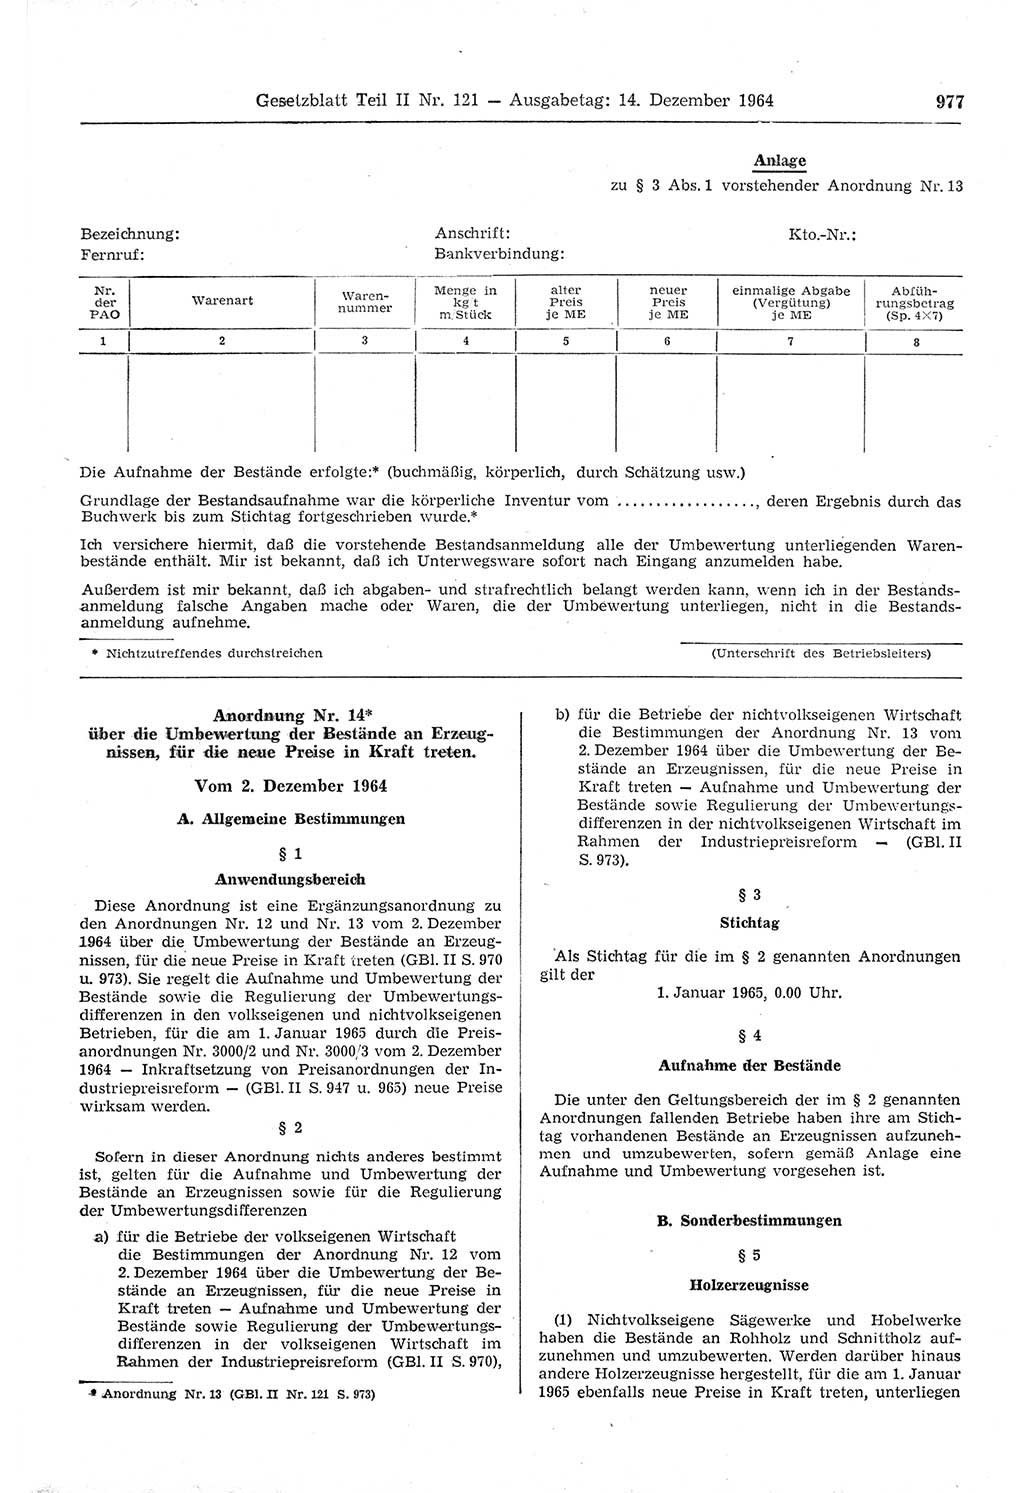 Gesetzblatt (GBl.) der Deutschen Demokratischen Republik (DDR) Teil ⅠⅠ 1964, Seite 977 (GBl. DDR ⅠⅠ 1964, S. 977)